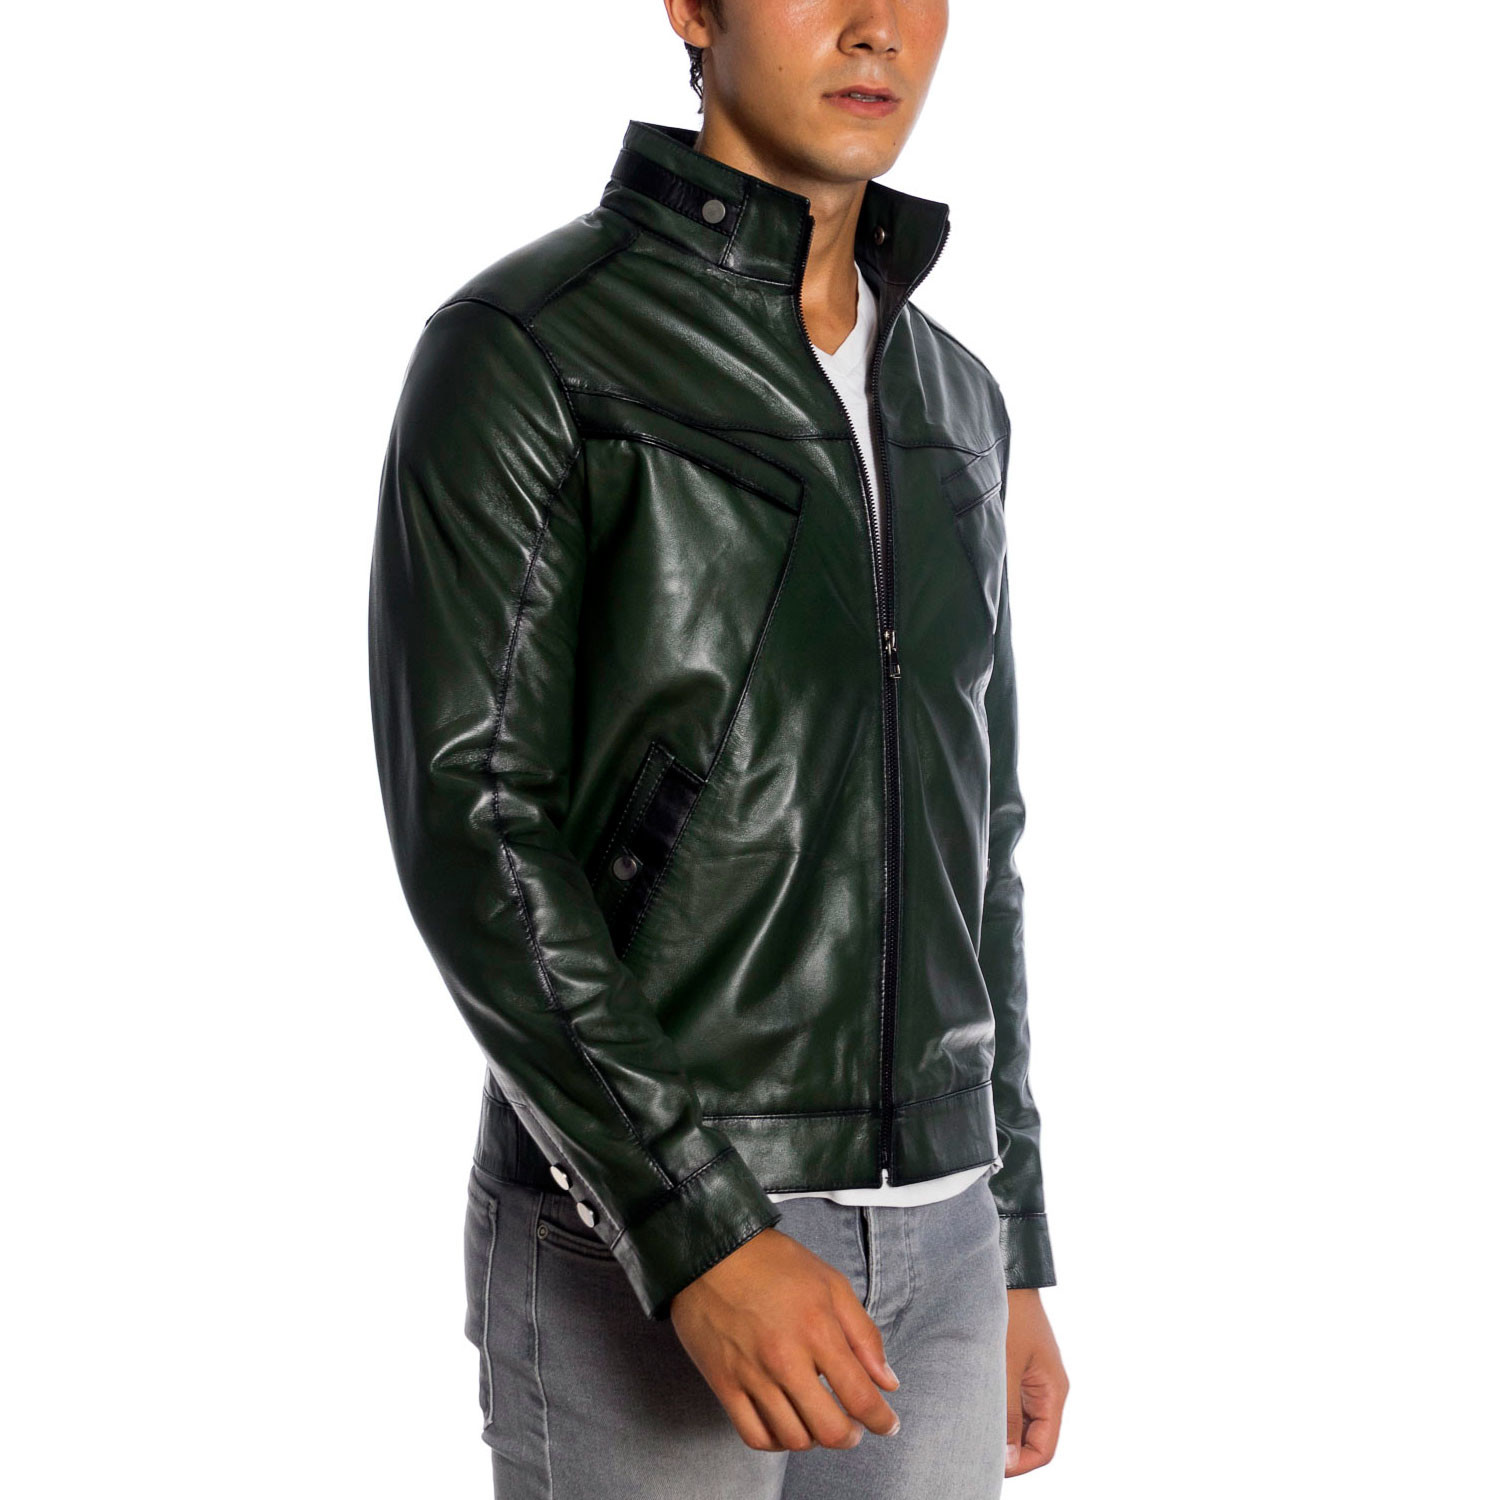 Andrew Leather Jacket // Green (S) - YASEMEN DIŞ TİCARET LTD. ŞTİ ...